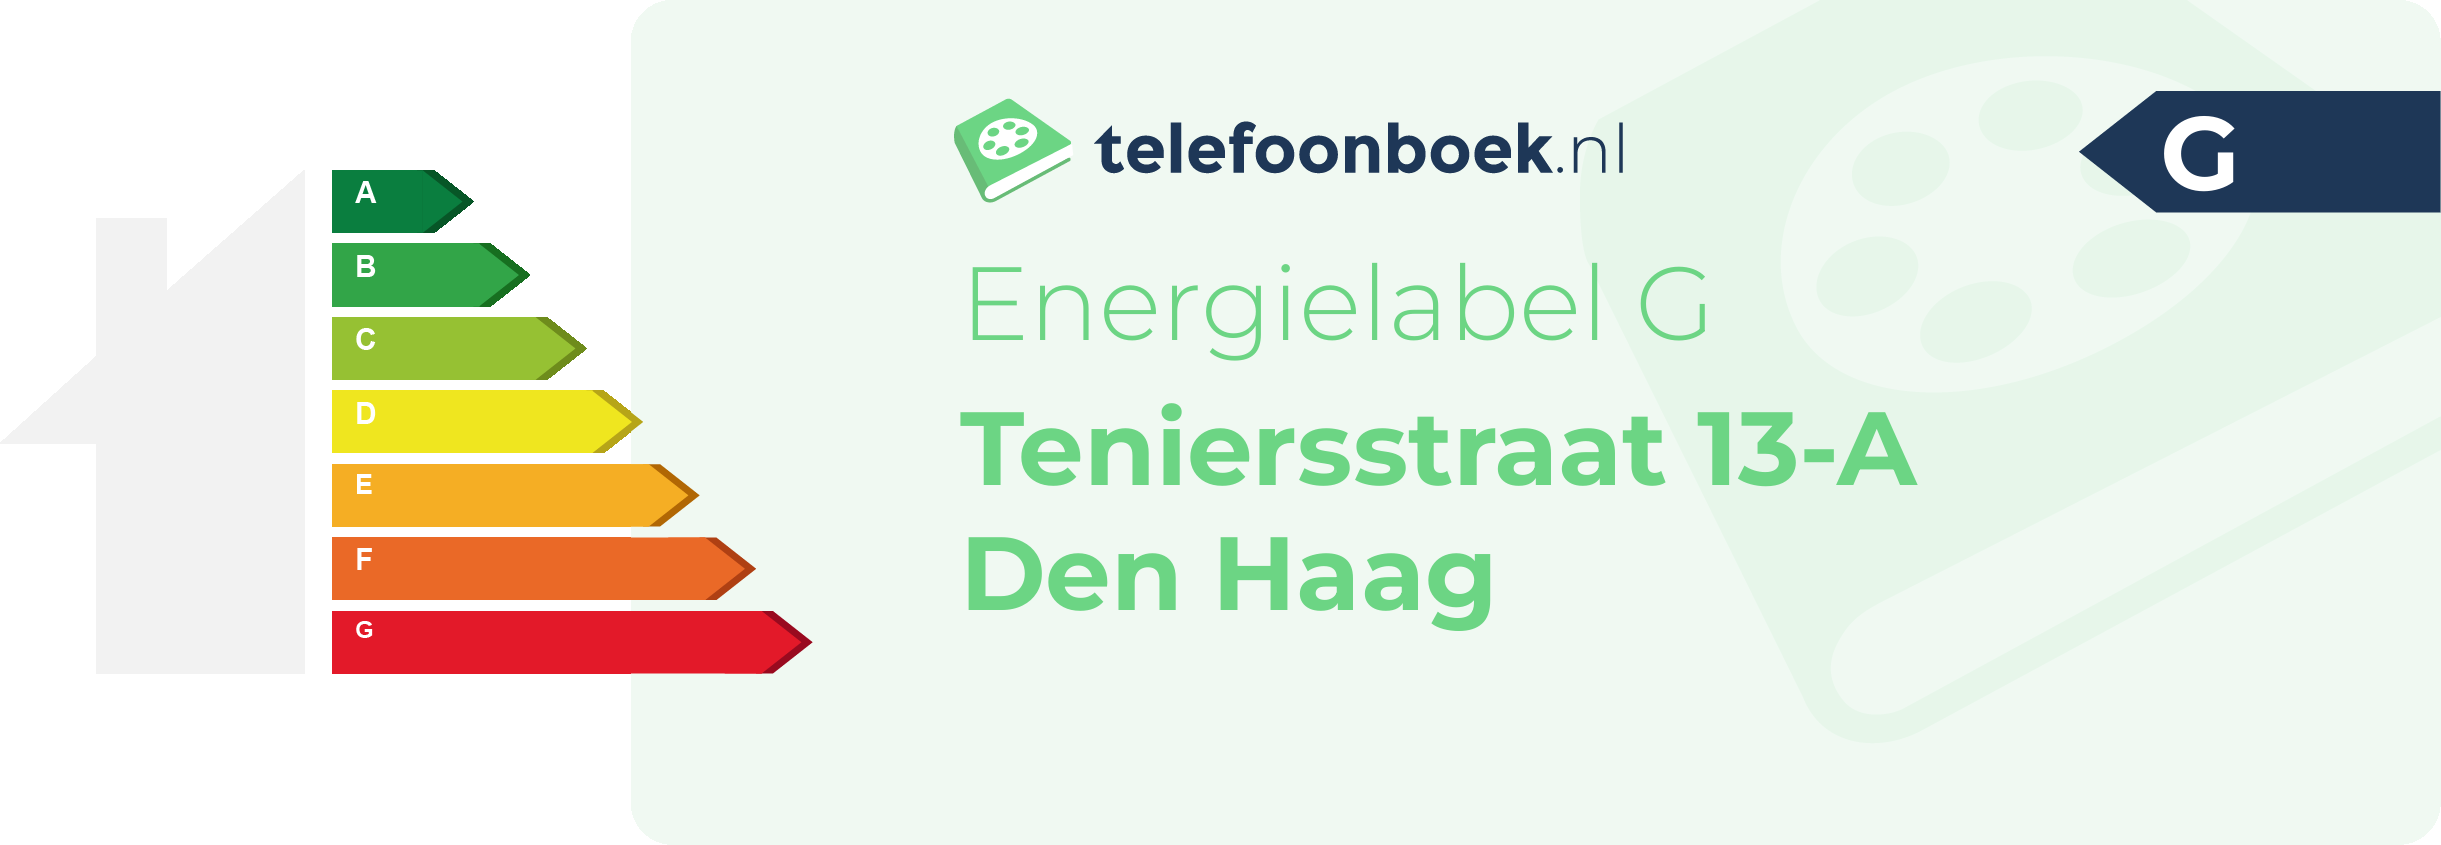 Energielabel Teniersstraat 13-A Den Haag